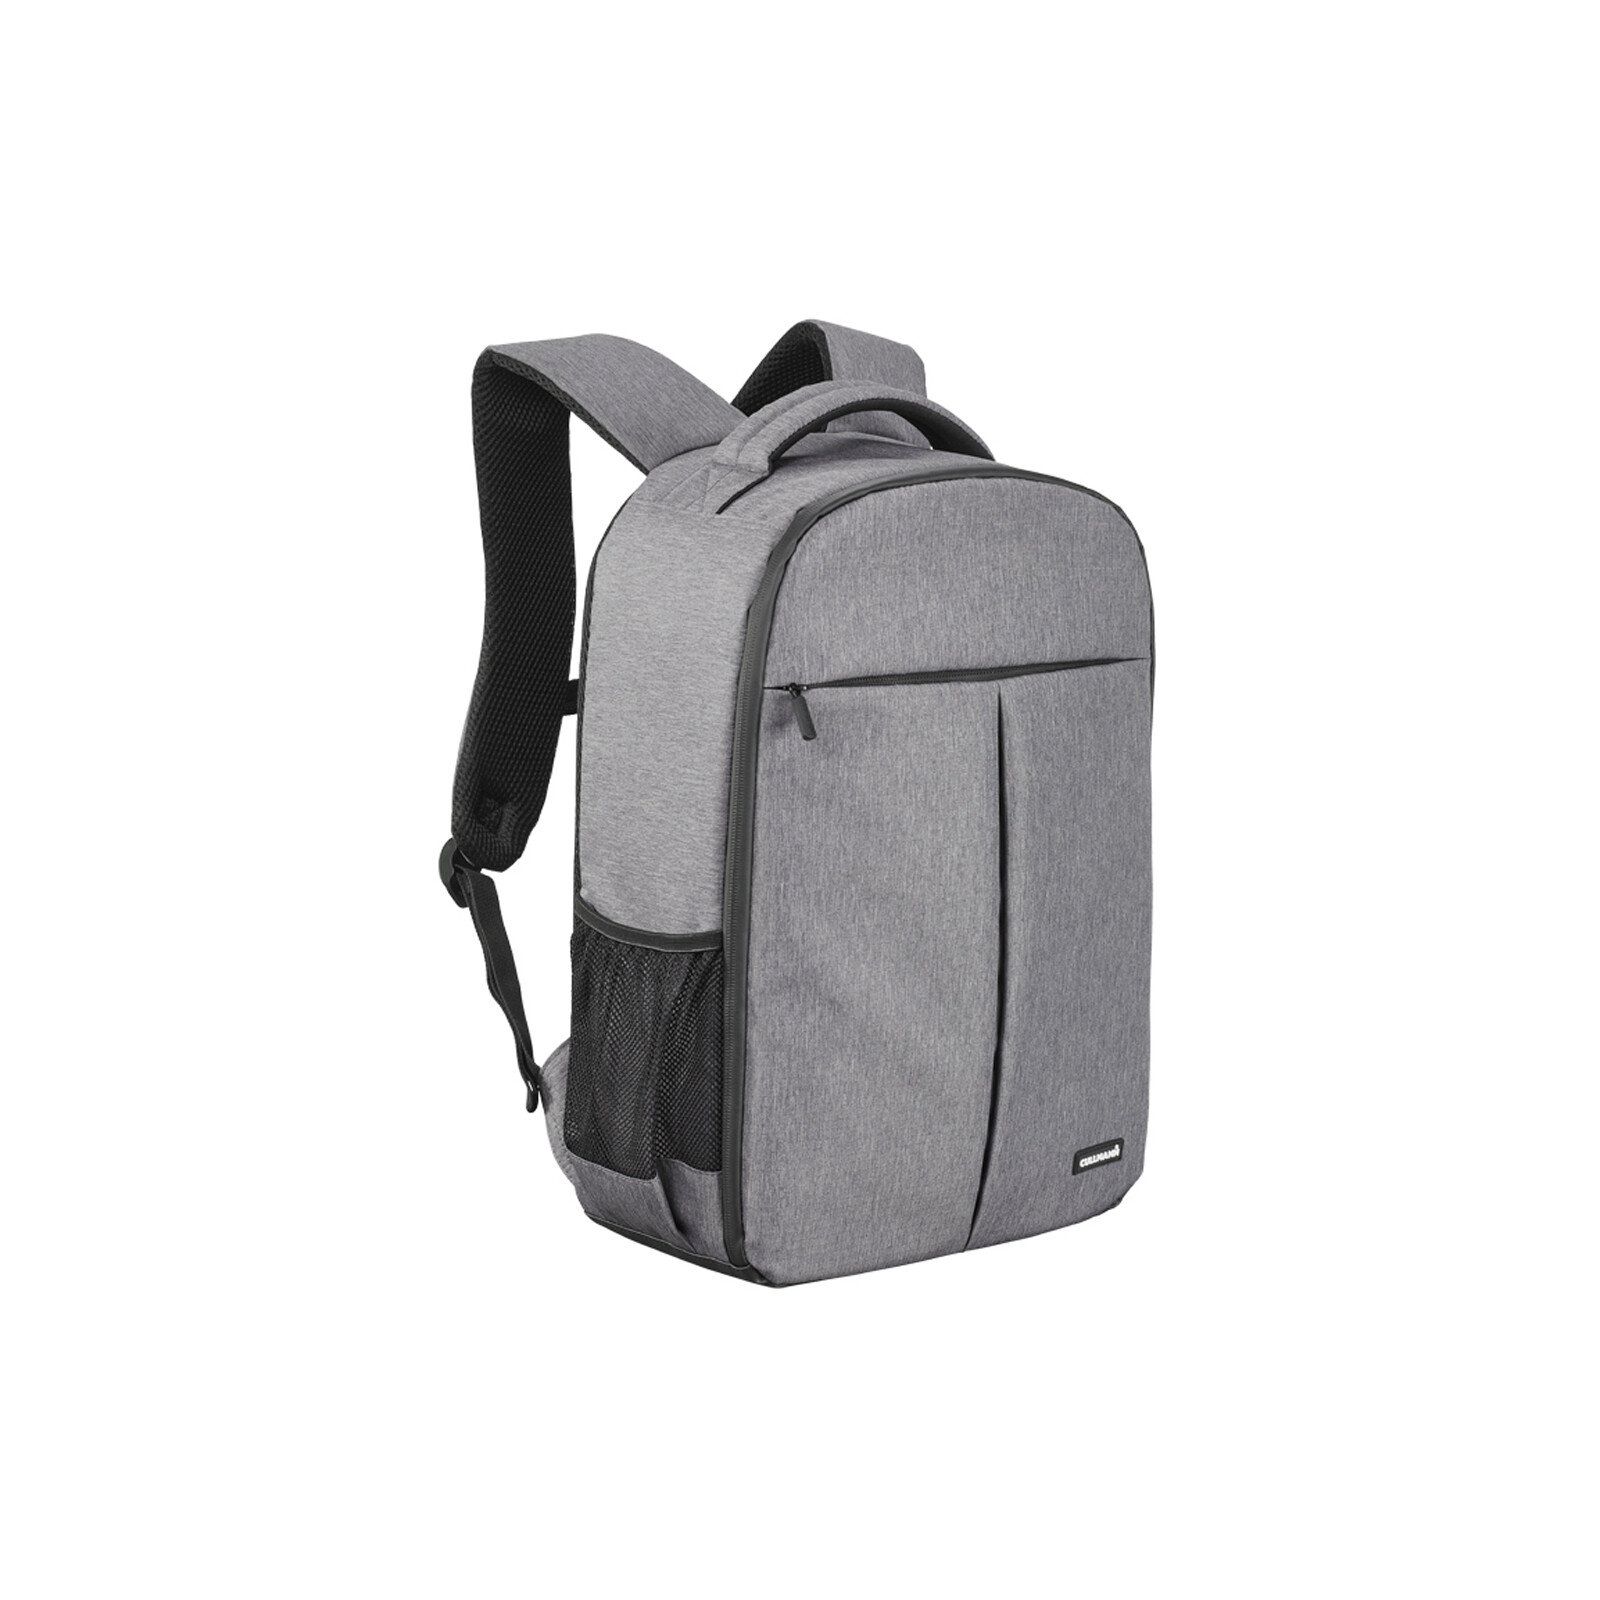 Cullmann Malaga Backpack 500+ Grau